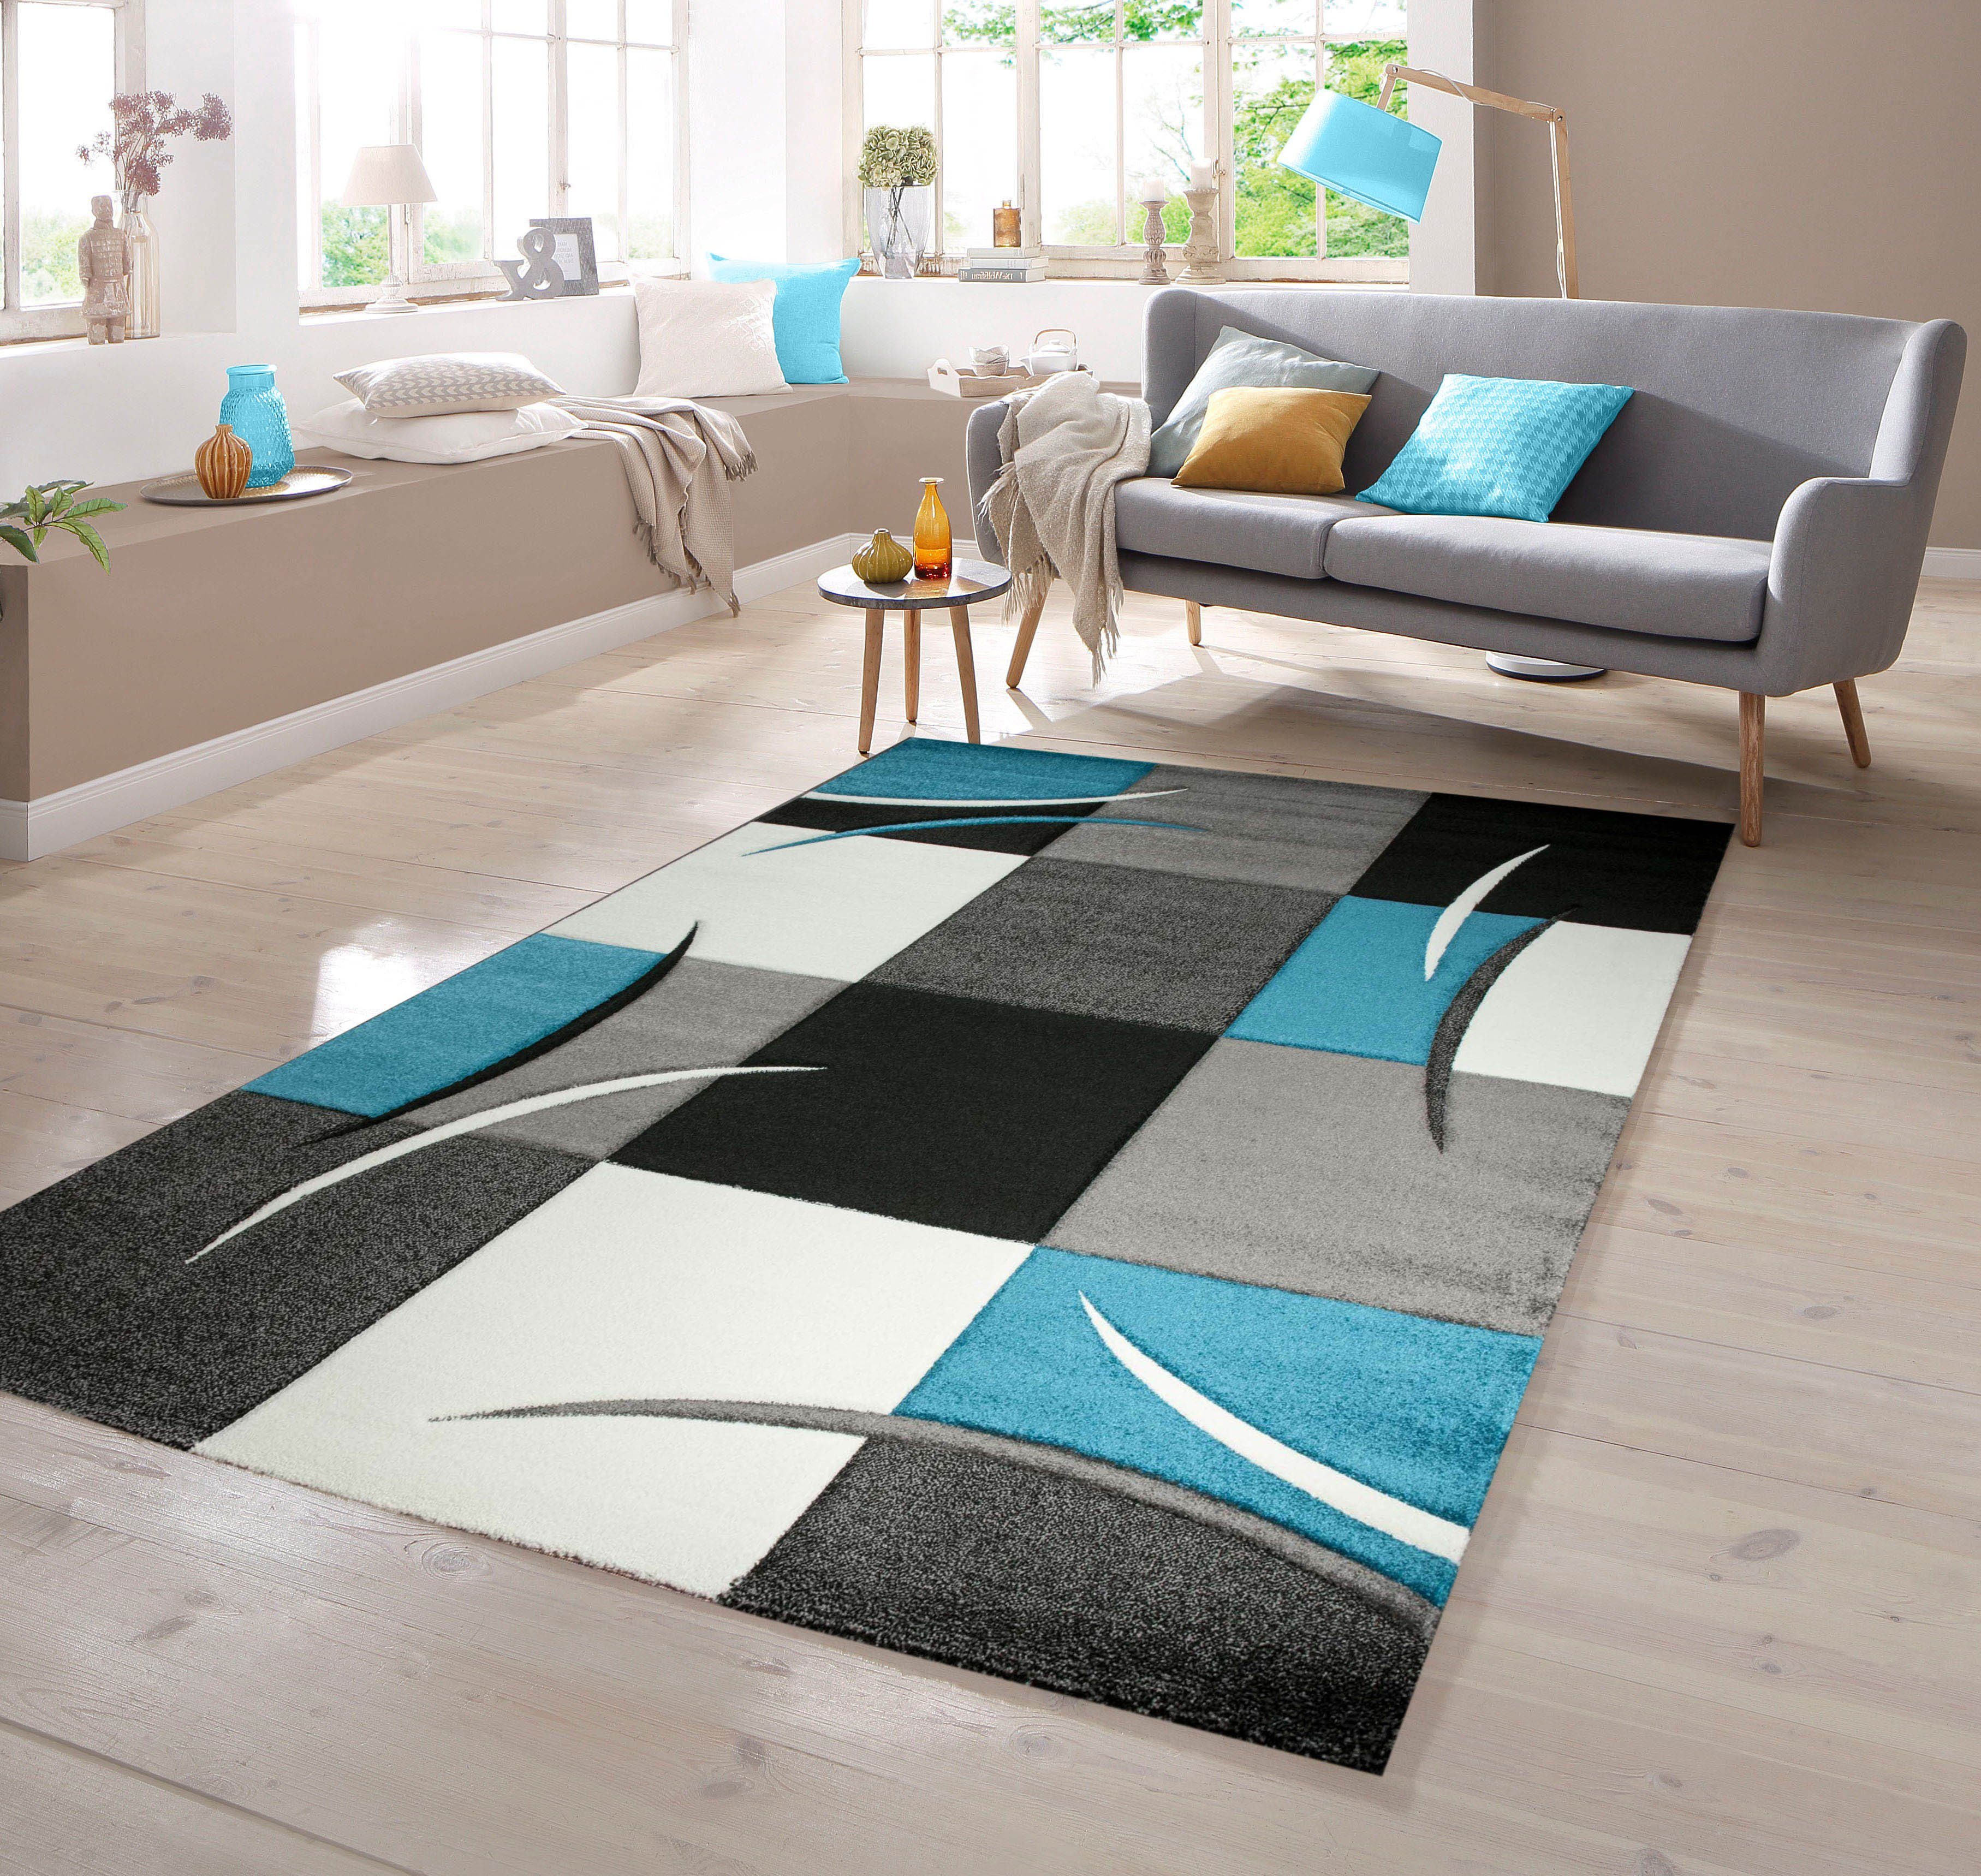 Teppich Designer Teppich Moderner mit Konturenschnitt Karo Muster Türkis Grau Weiß Schwarz, TeppichHome24, rechteckig